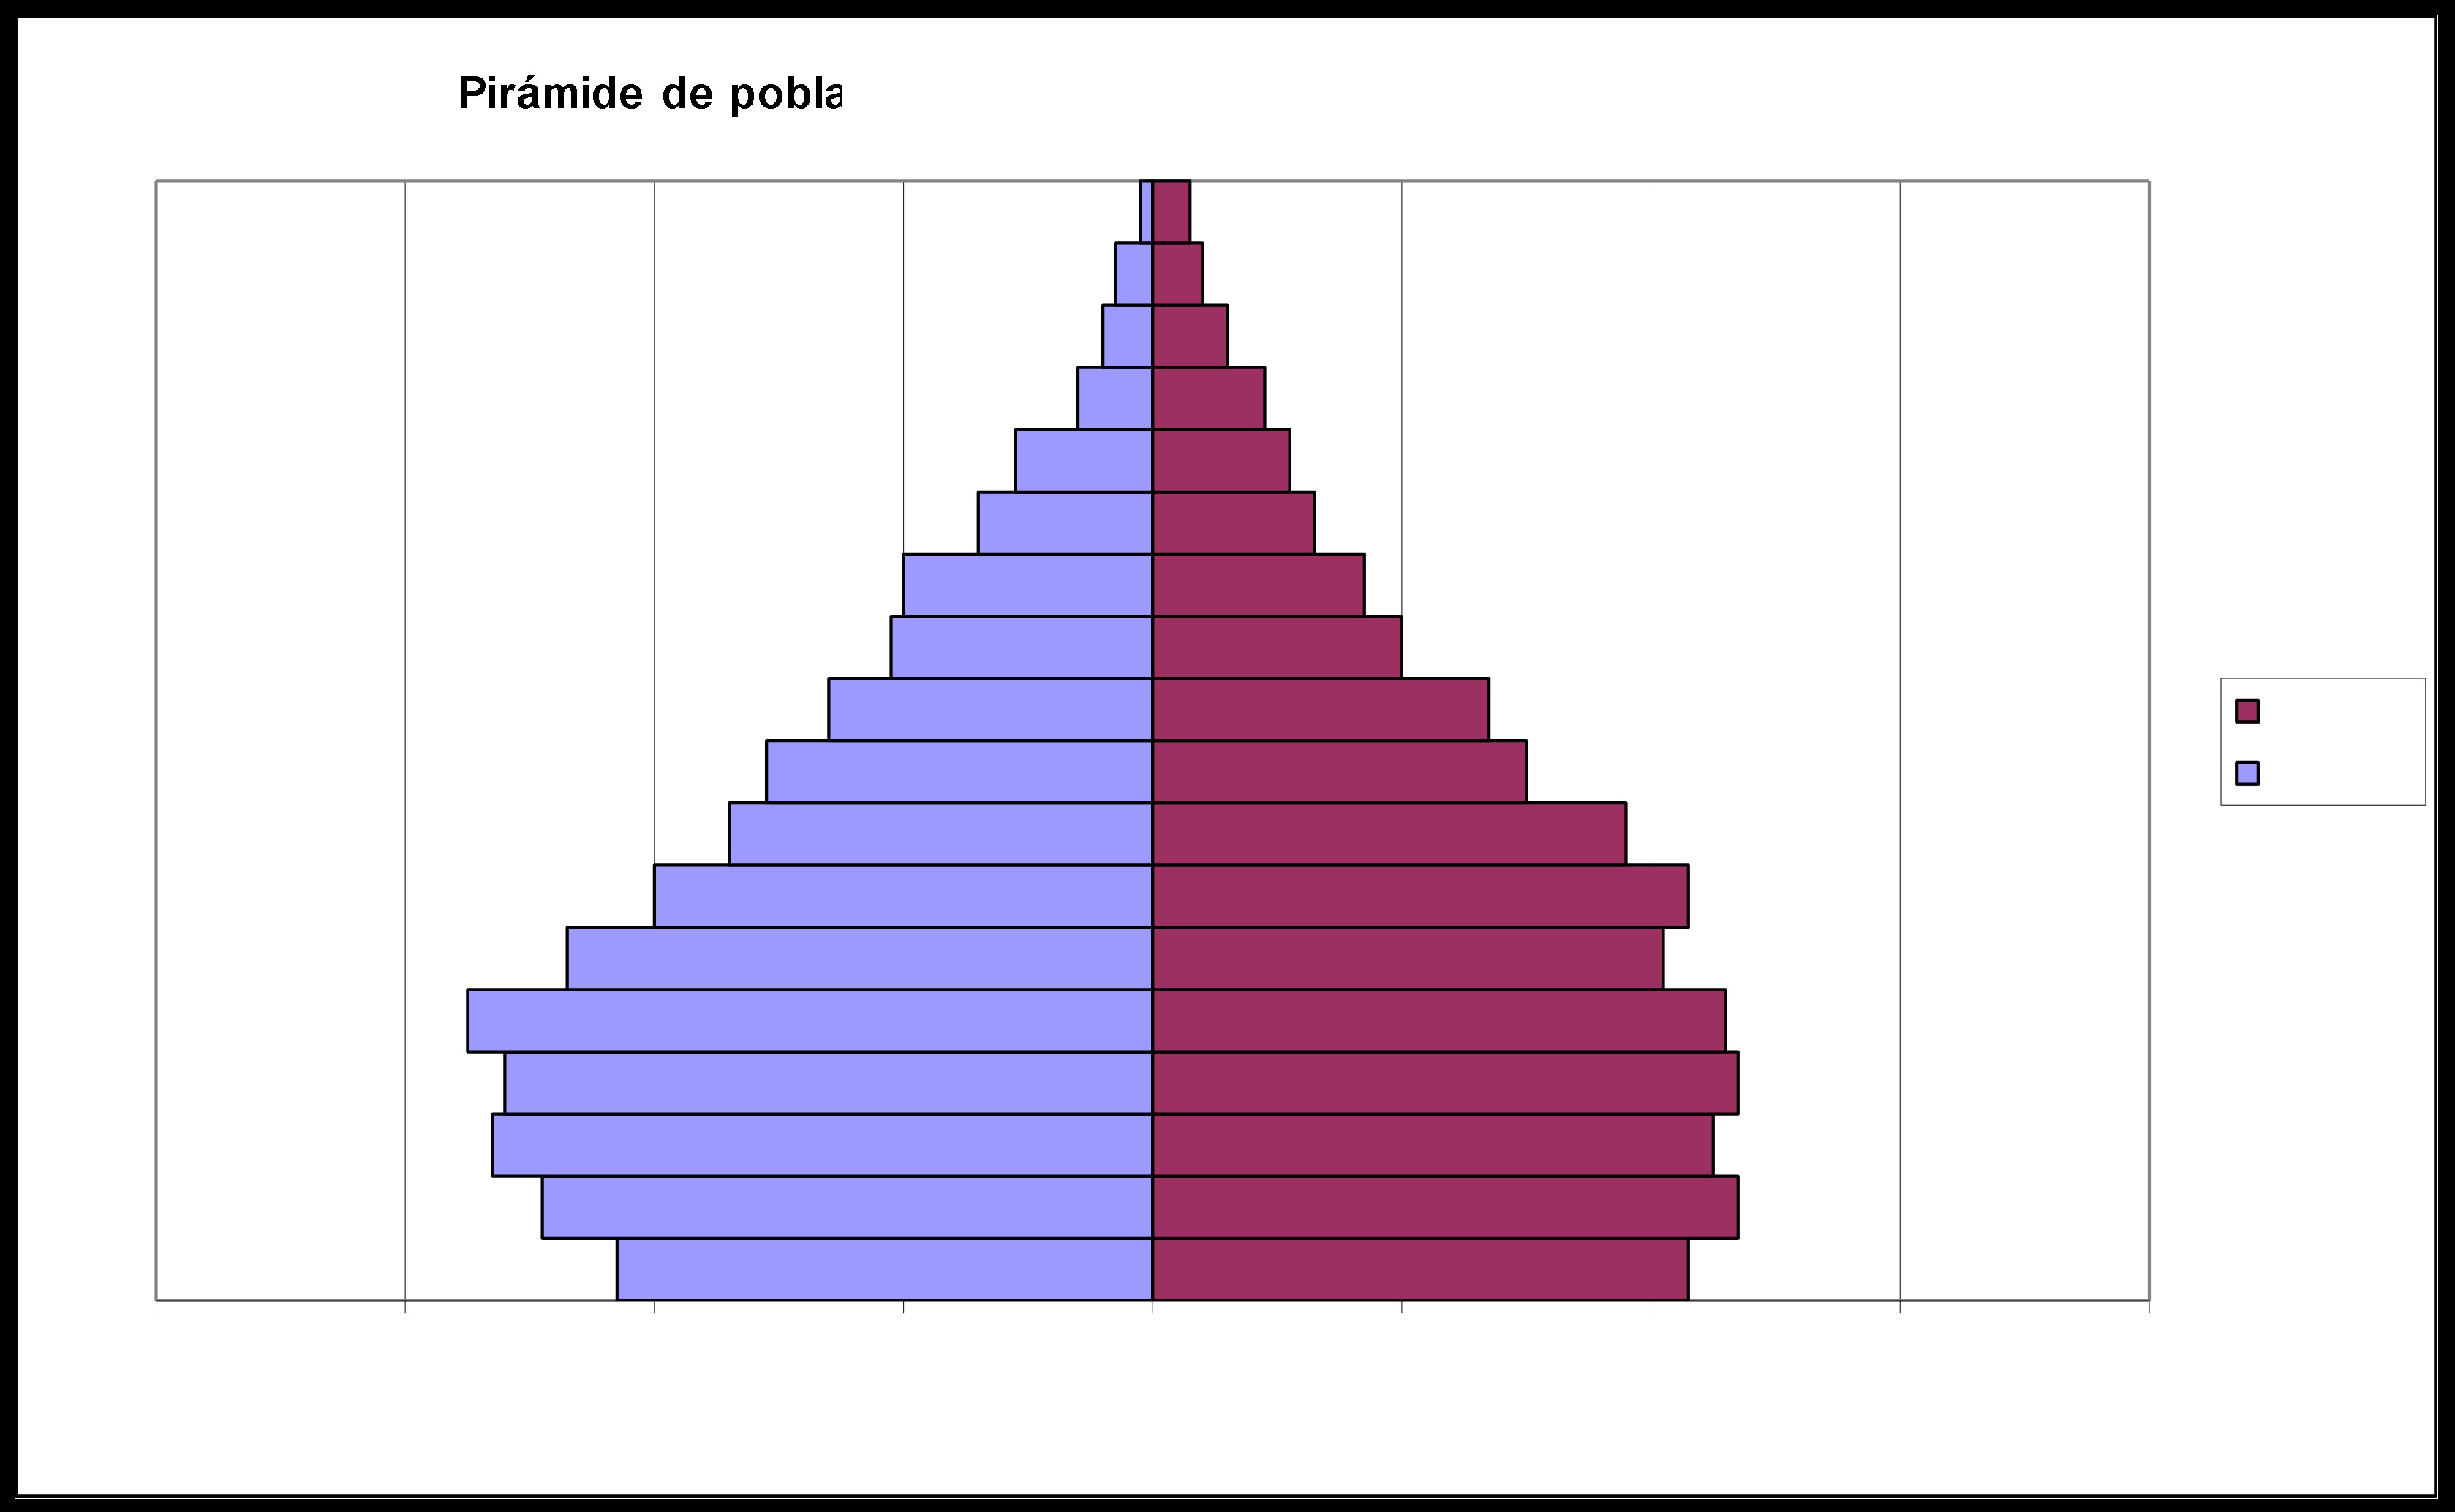 transitoria, principalmente el grupo de menor edad (0-4 años); como así también, una menor presencia de población en la cúspide de la pirámide, lo que da lugar a una pirámide de tipo